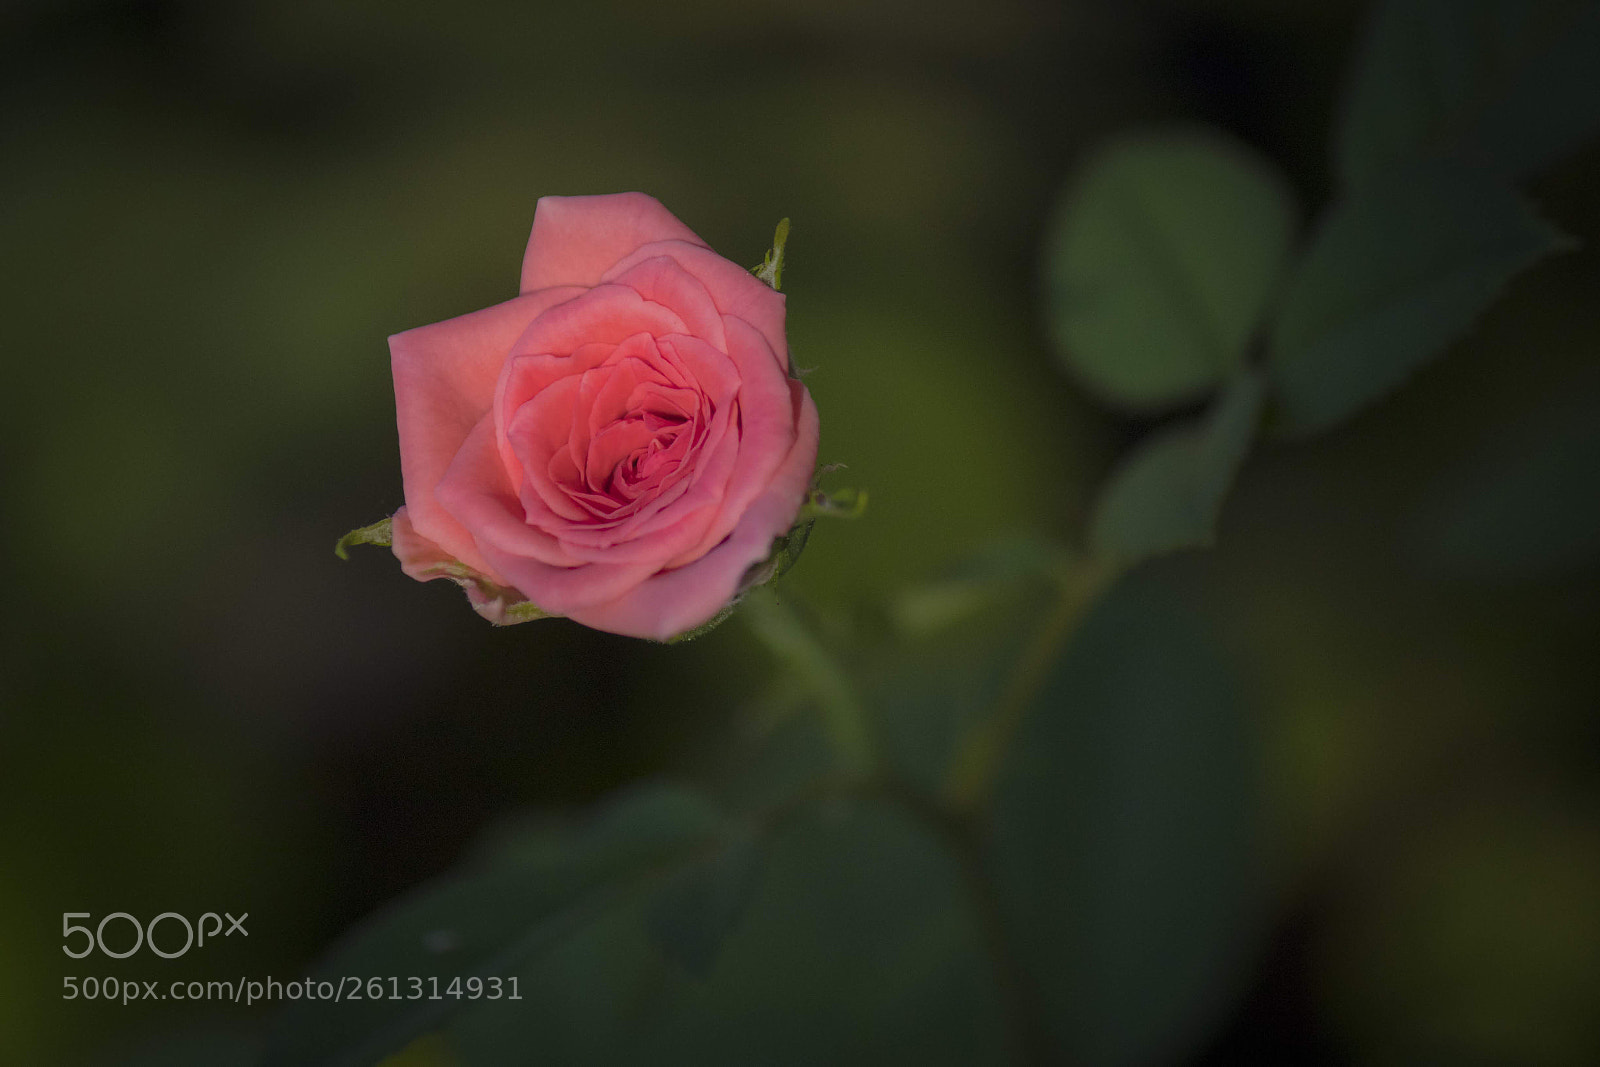 Canon EOS 80D sample photo. Garden rose photography